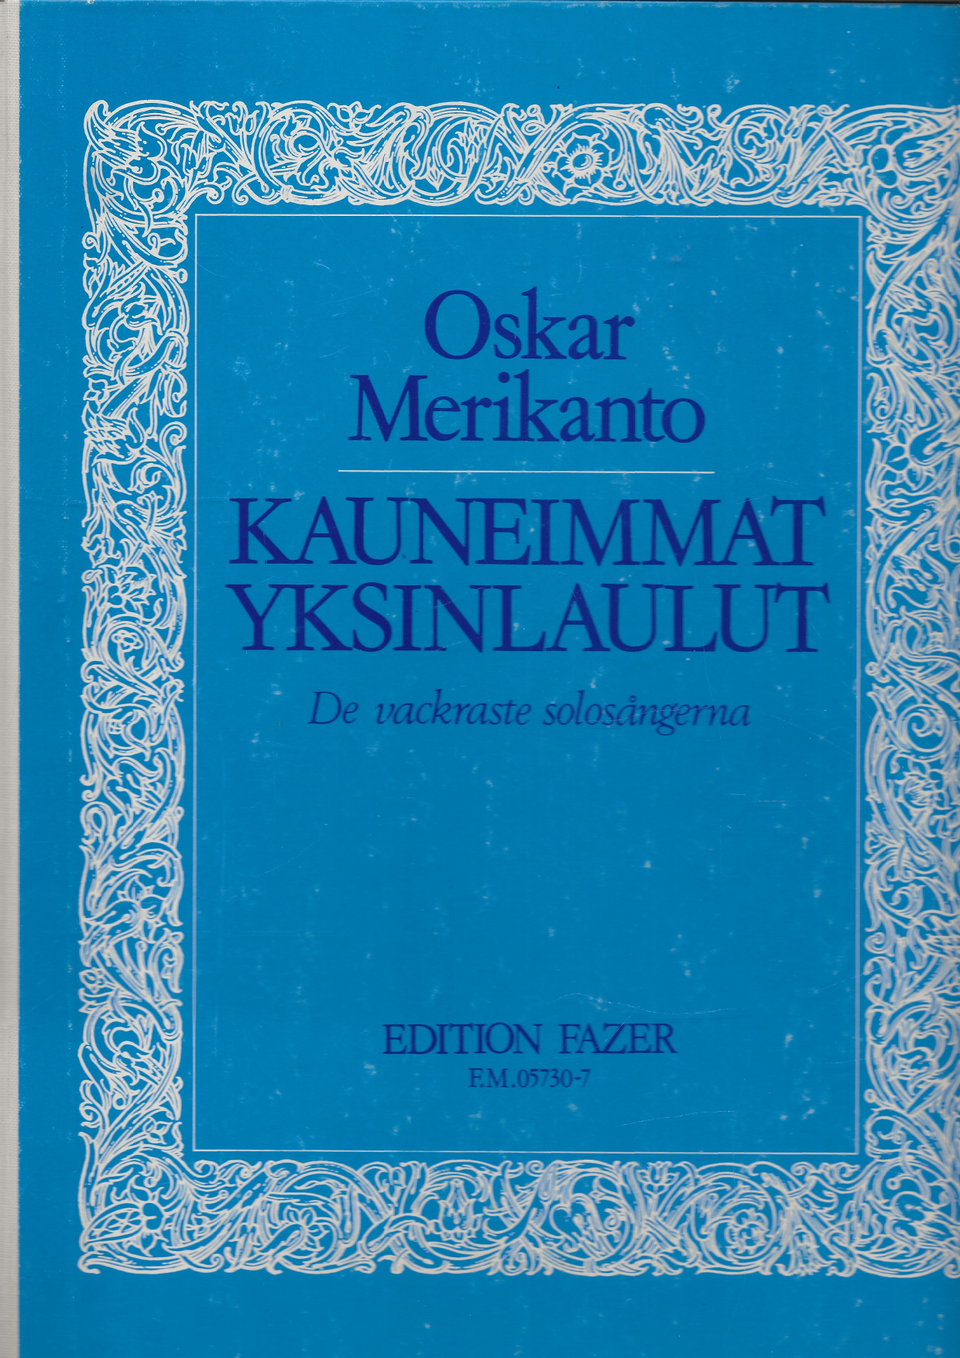 Oskar Merikanto - Kauneimmat yksinlaulut 1, Fazer 1974